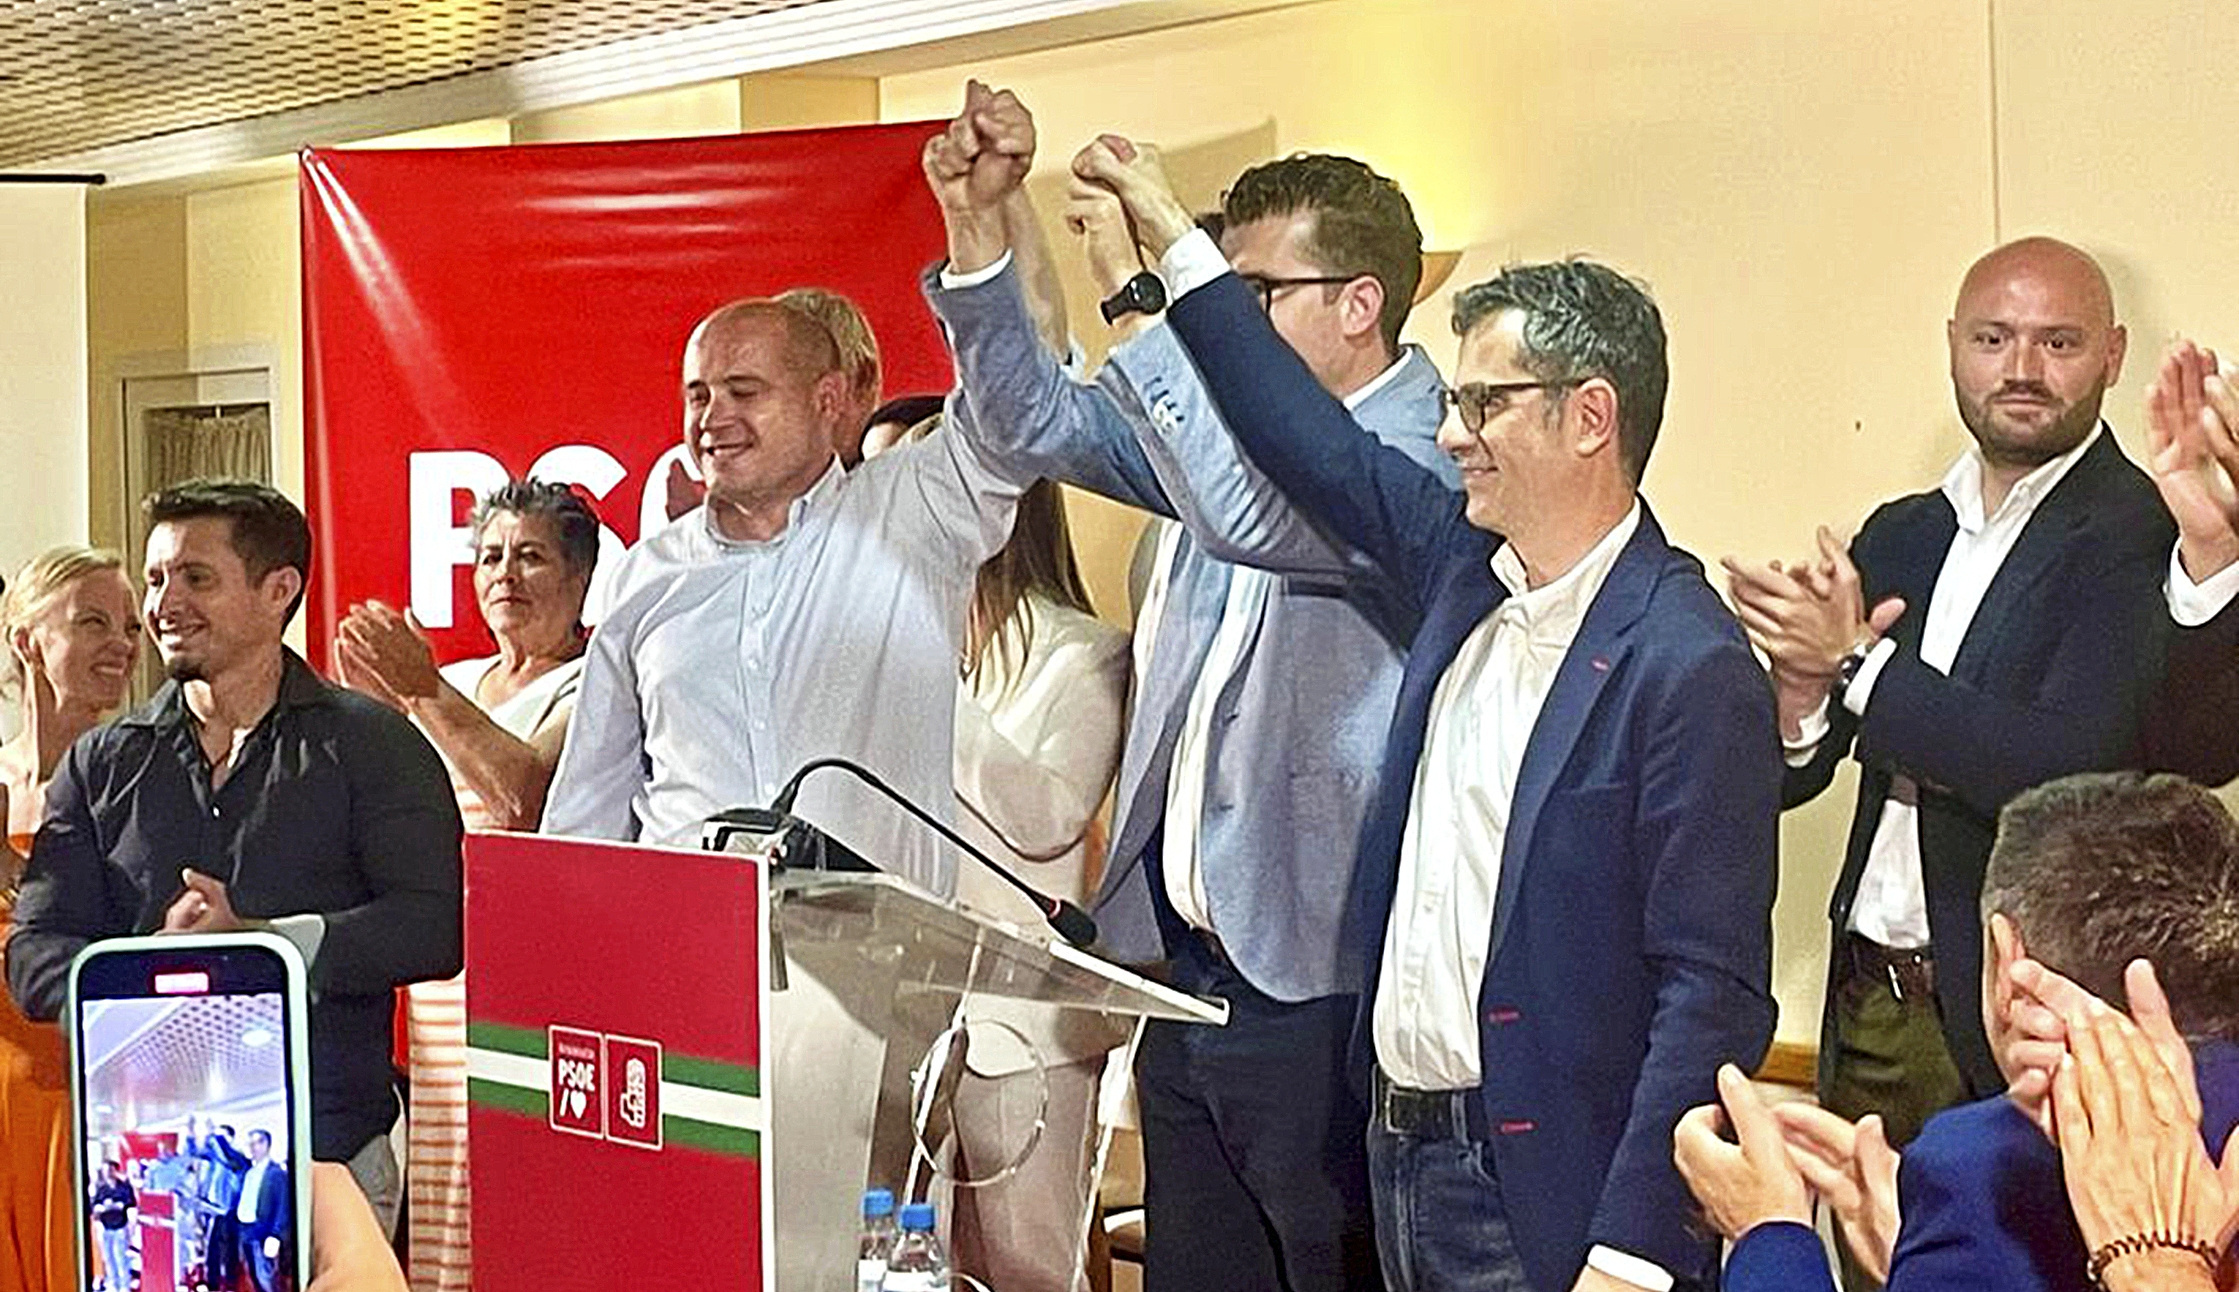 Cristóbal Vizcaíno, detrás del ministro Bolaños, en el acto del PSOE en Mojácar el 19 de mayo.